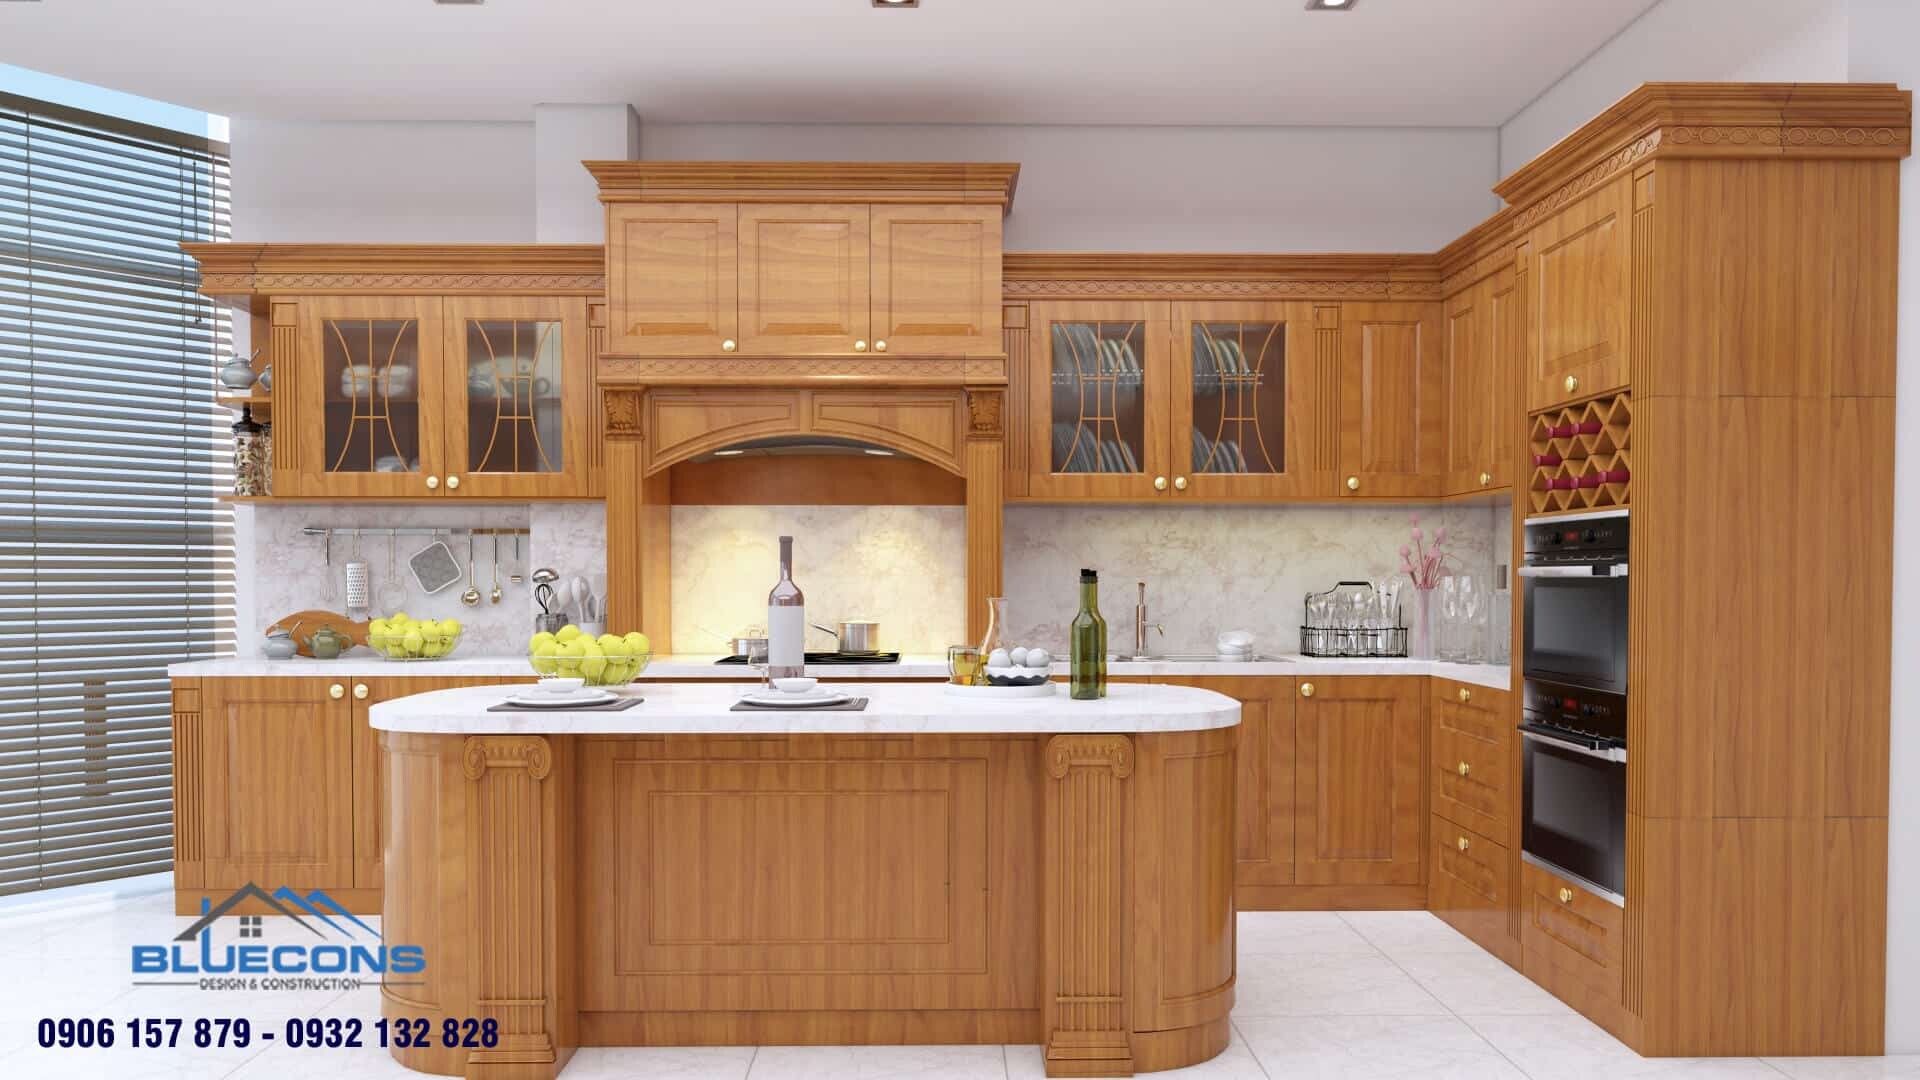 Tủ bếp gỗ đẹp hình chữ i dành cho nội thất cao cấp, hiện đại